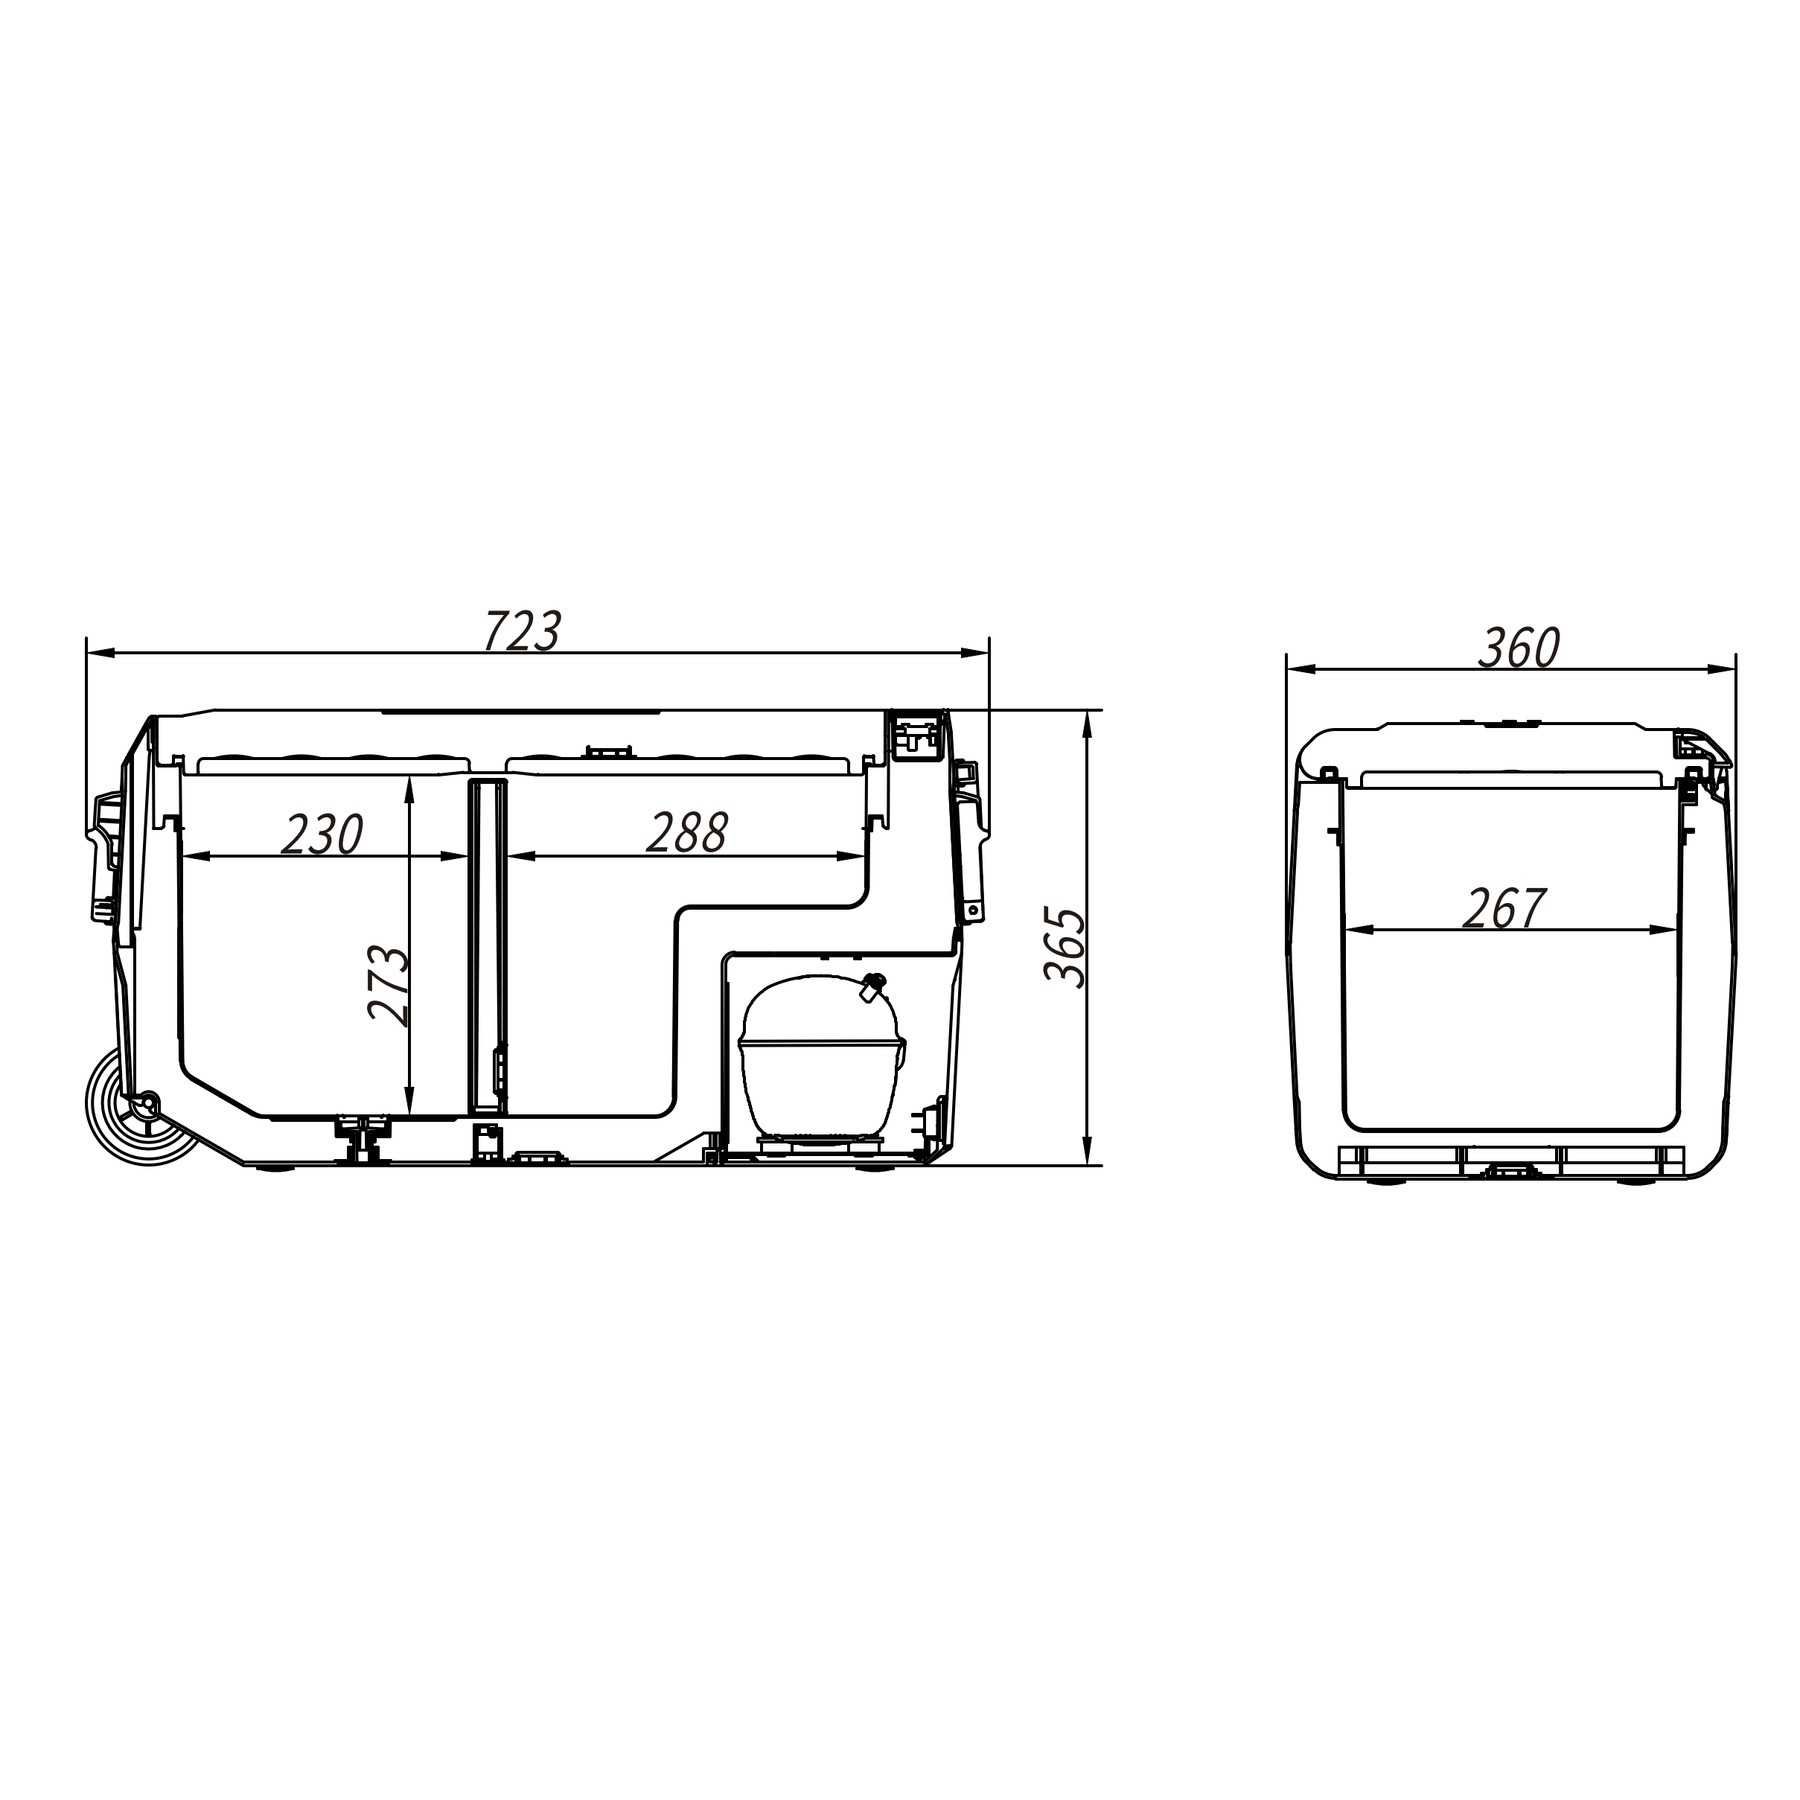 Автохолодильник Компресорний Alpicool T36 (LG) (двокамерний, 36 л)